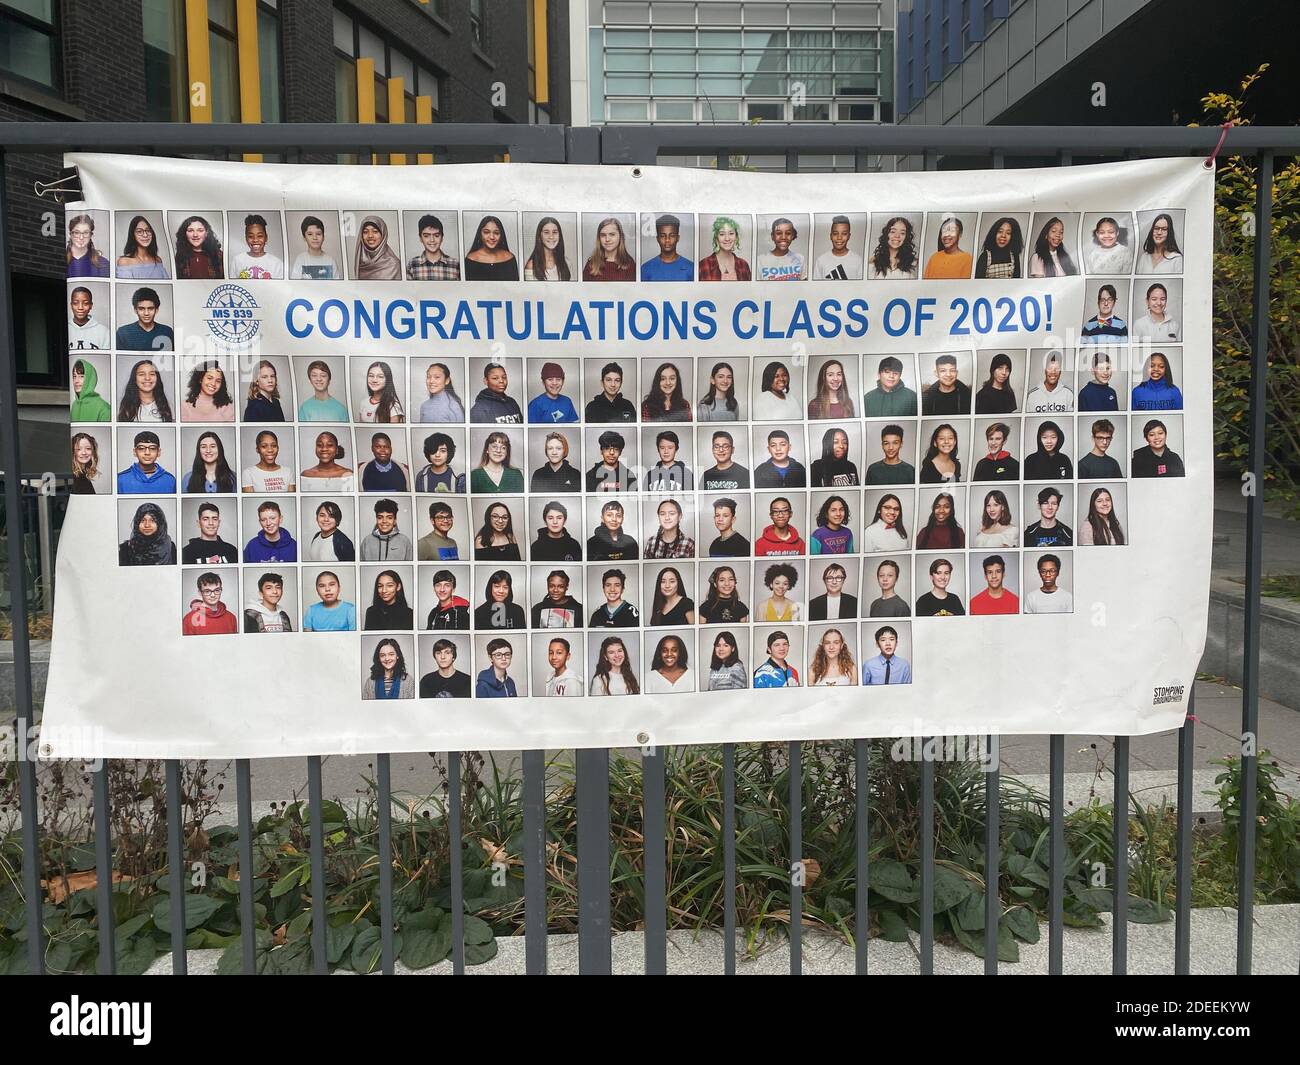 Portraits de diplômés du milieu scolaire exposés à l'extérieur d'une école car une photo de groupe n'a pas été possible pour le printemps Année scolaire 2020 à cause du Covid Banque D'Images